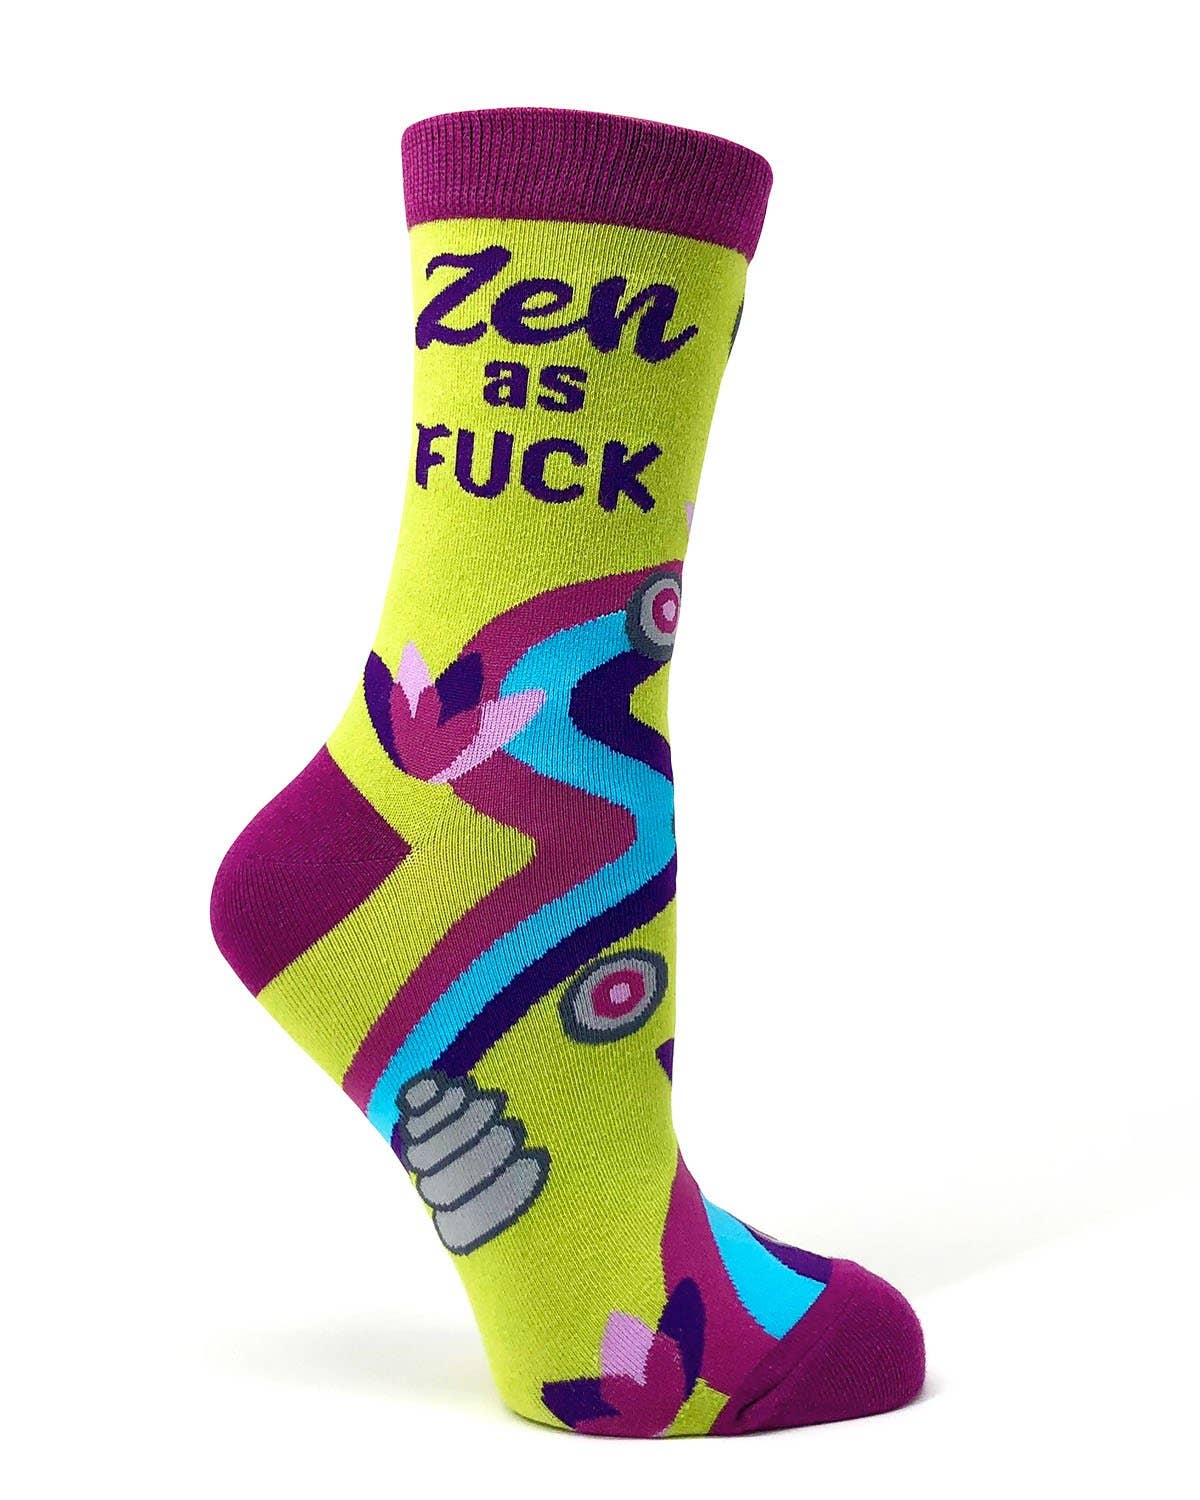 Zen as F**k Women's Crew Socks